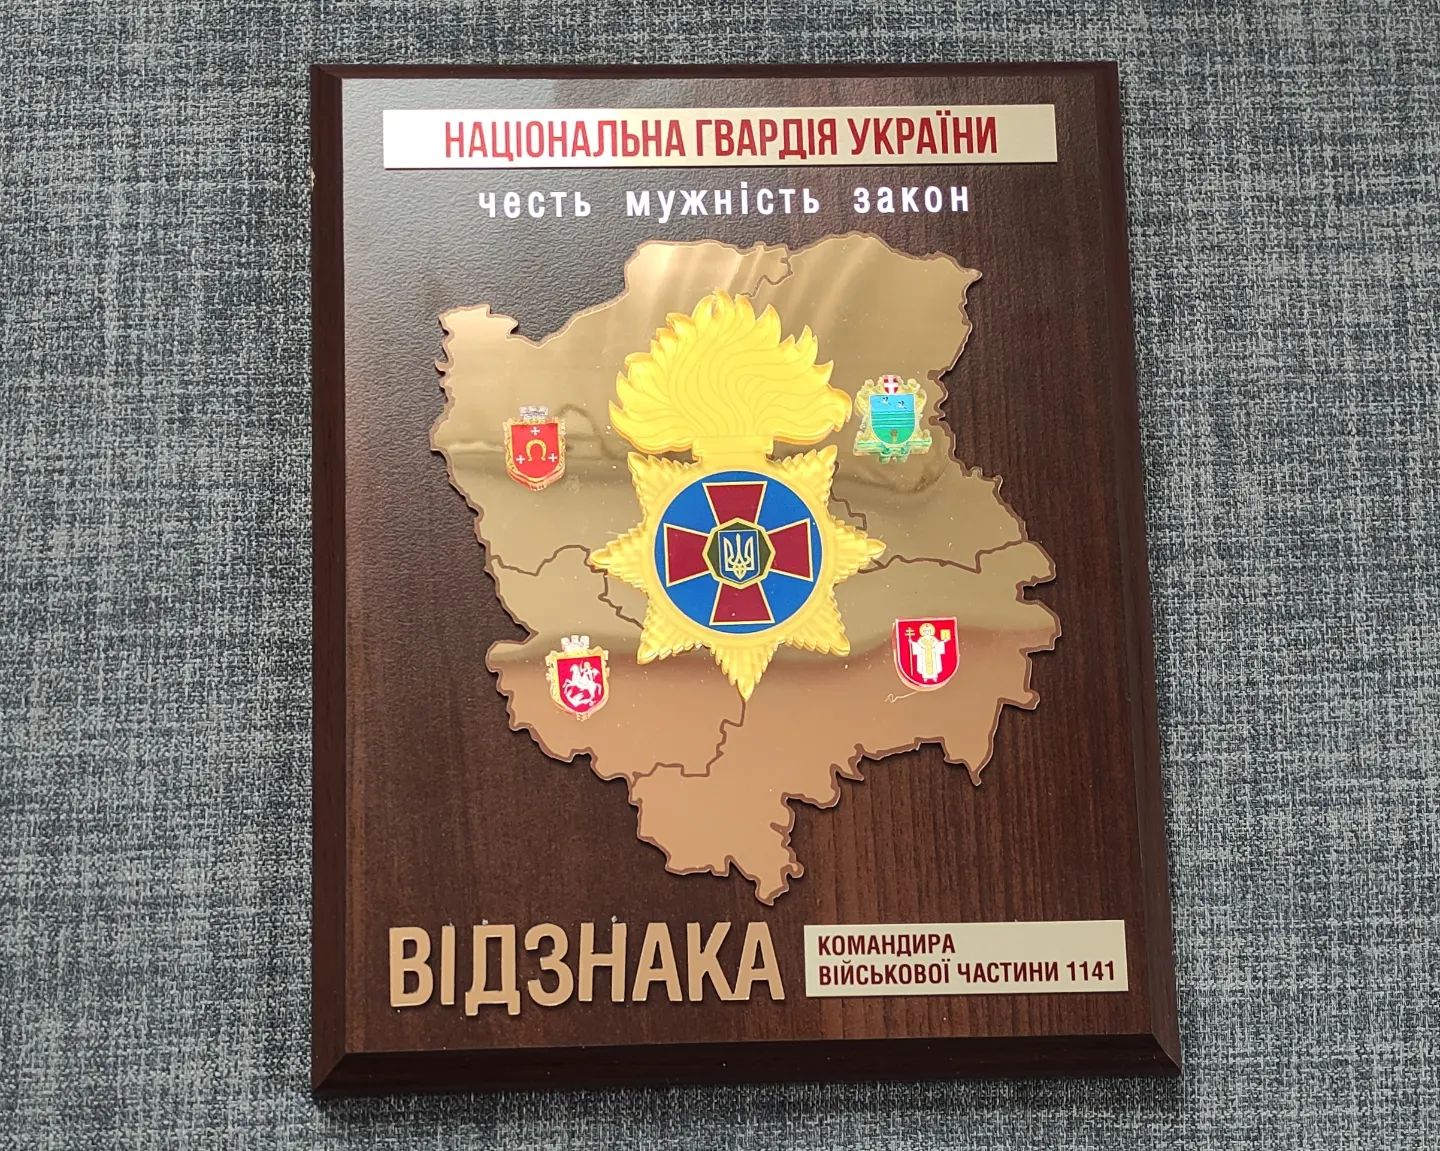 Відзнака від Національної гвардії України